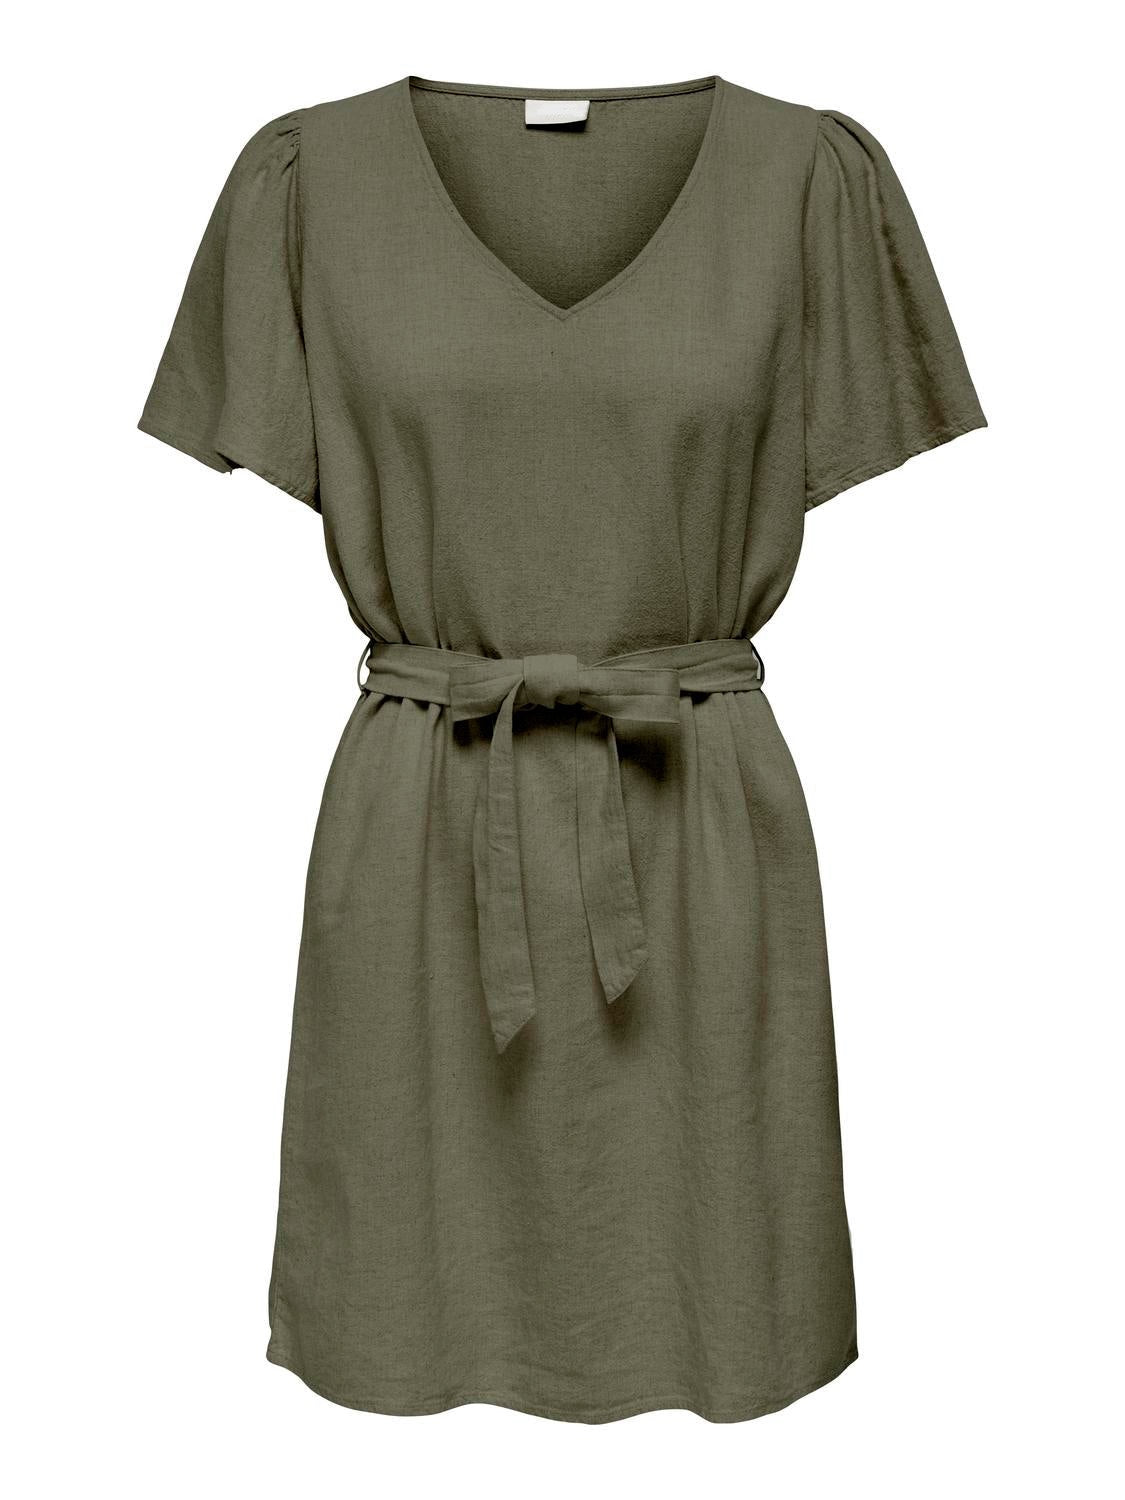 Khaki linen blend dress